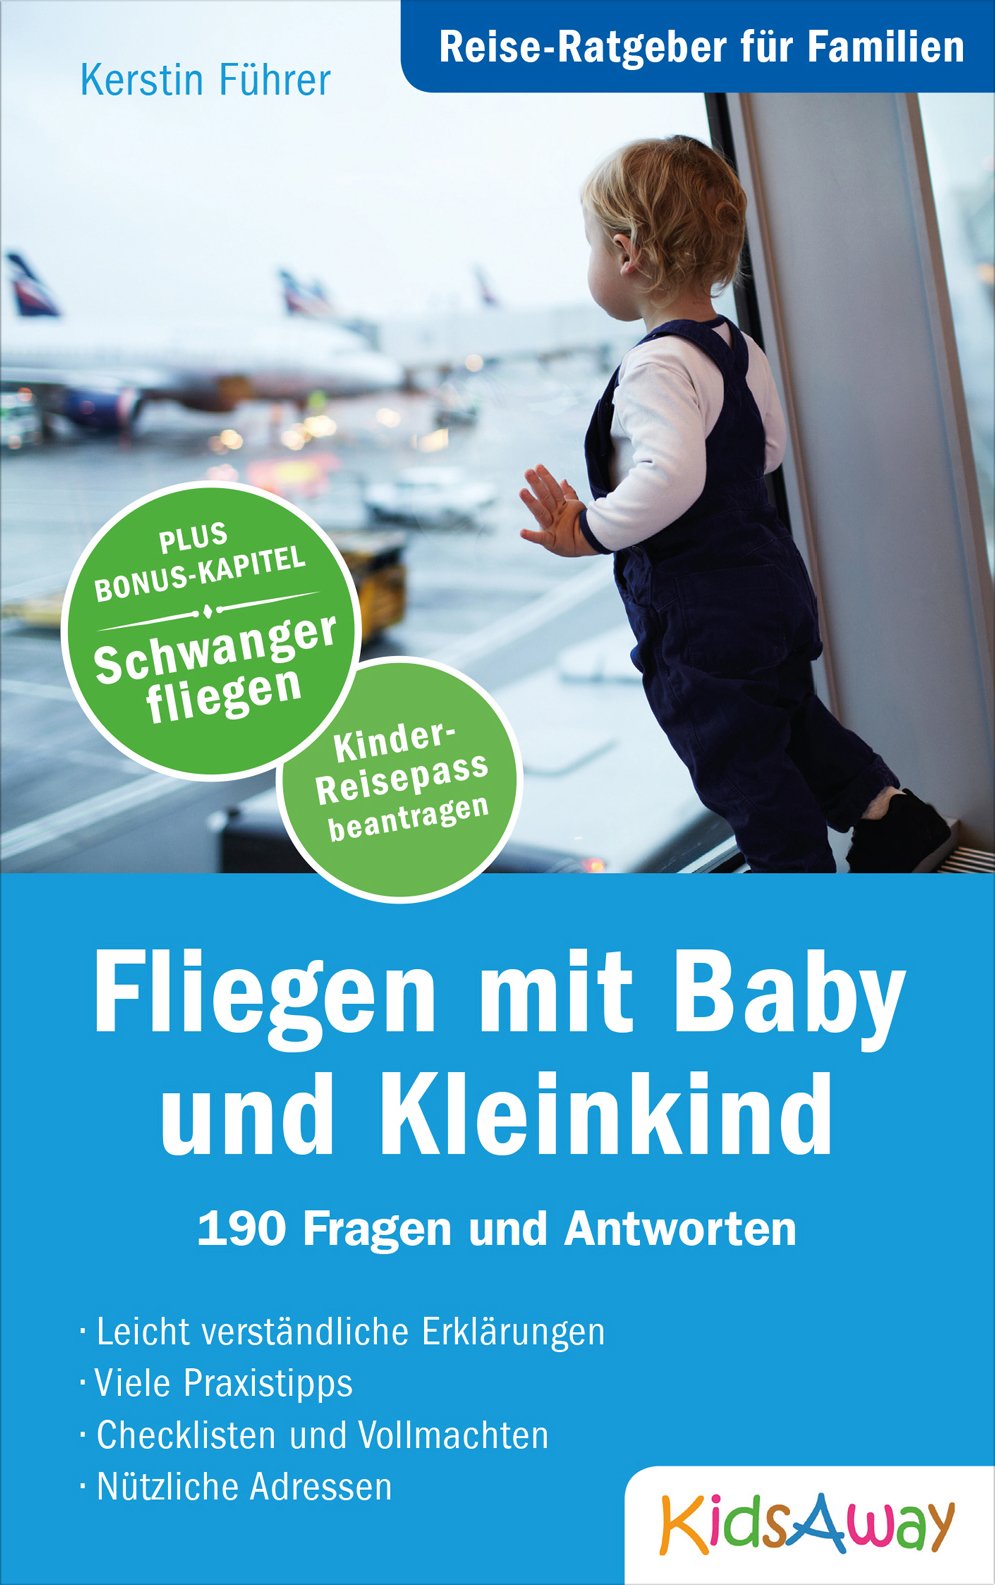 Reise-Ratgeber für Familien: Fliegen mit Baby und Kleinkind © KidsAway.de